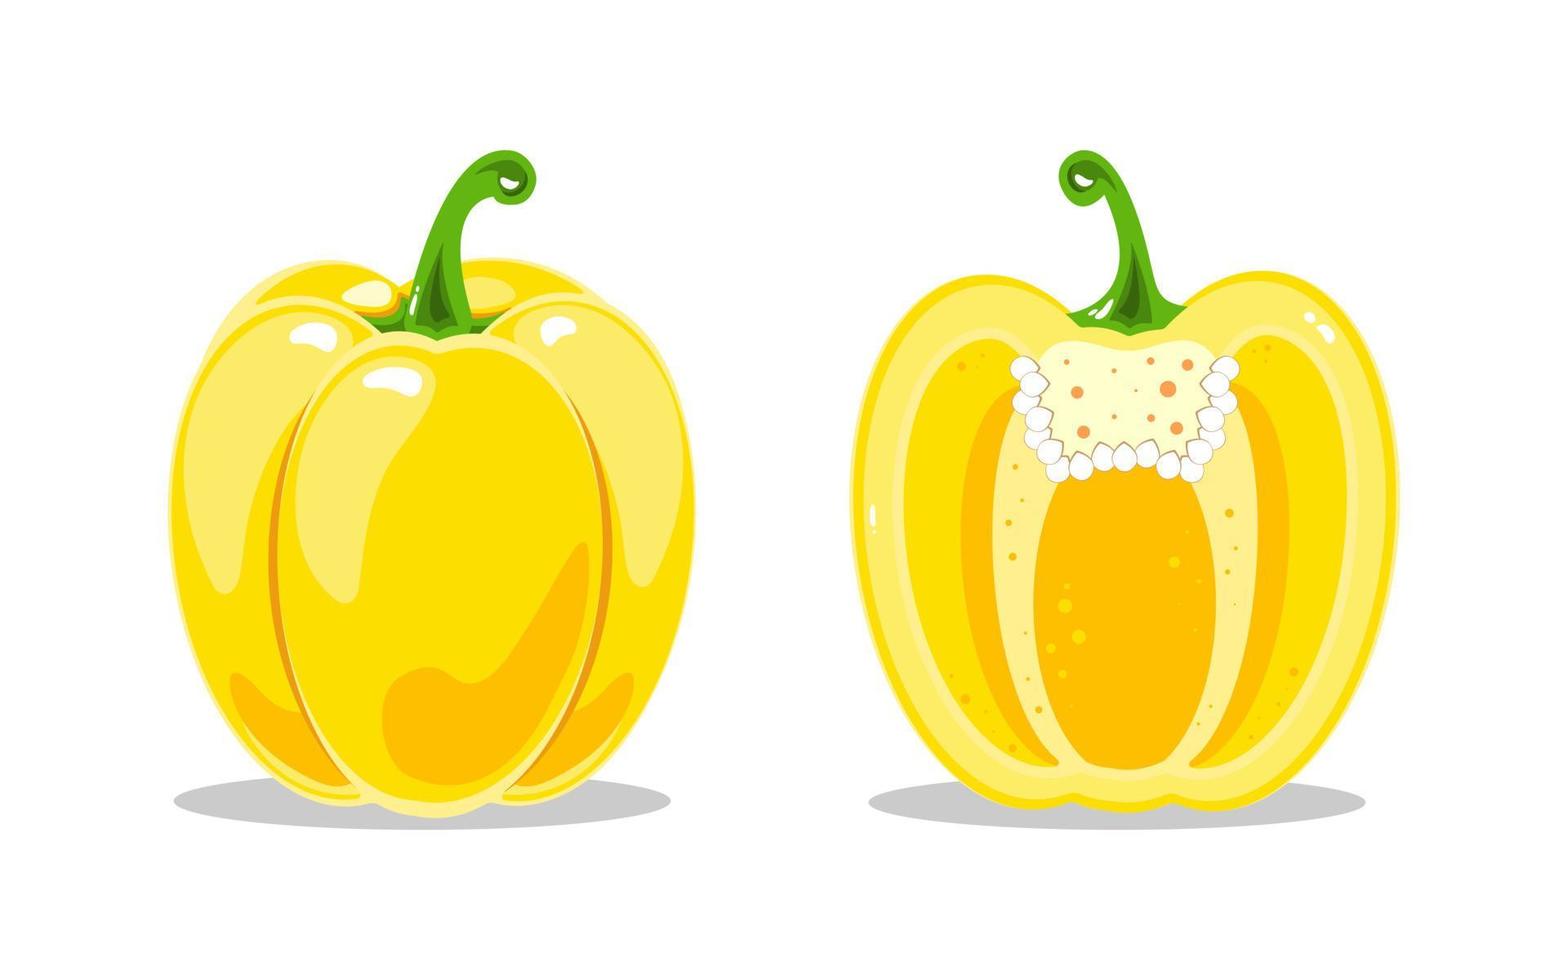 pimentão amarelo e pimentão amarelo no corte. nutrição saudável. ilustração em vetor de legumes.